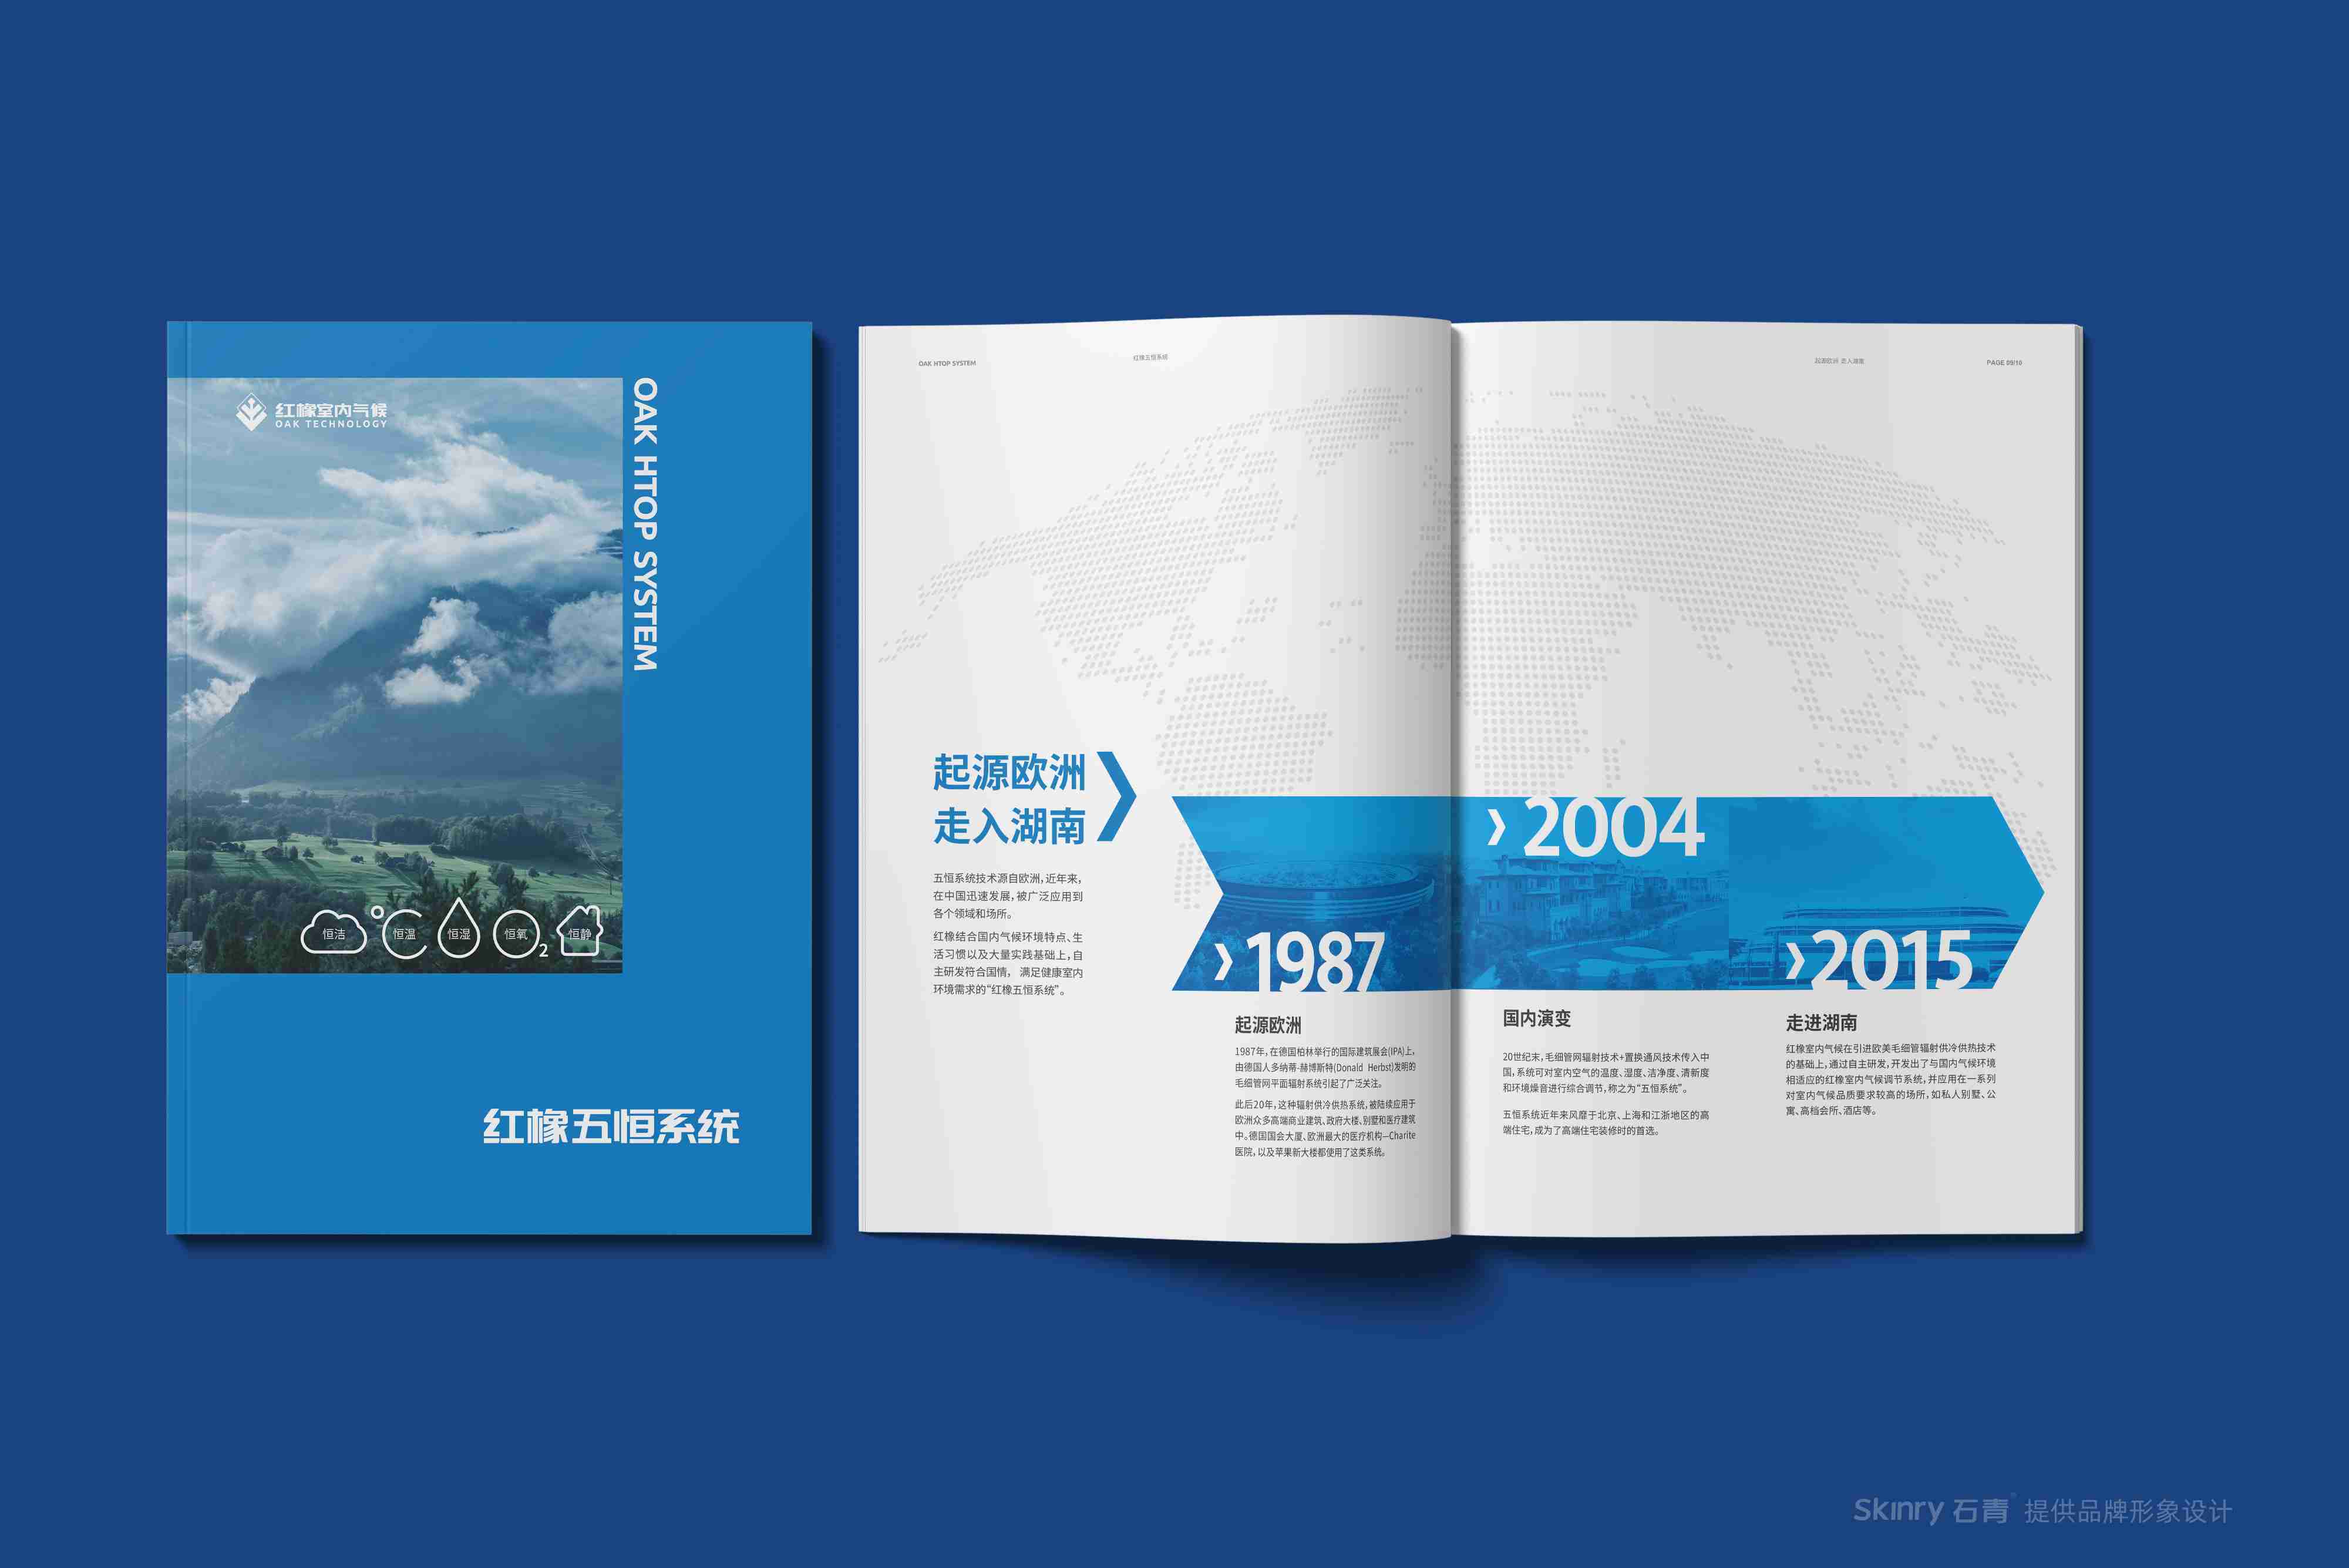 红橡室内气候集团科技宣传画册策划设计